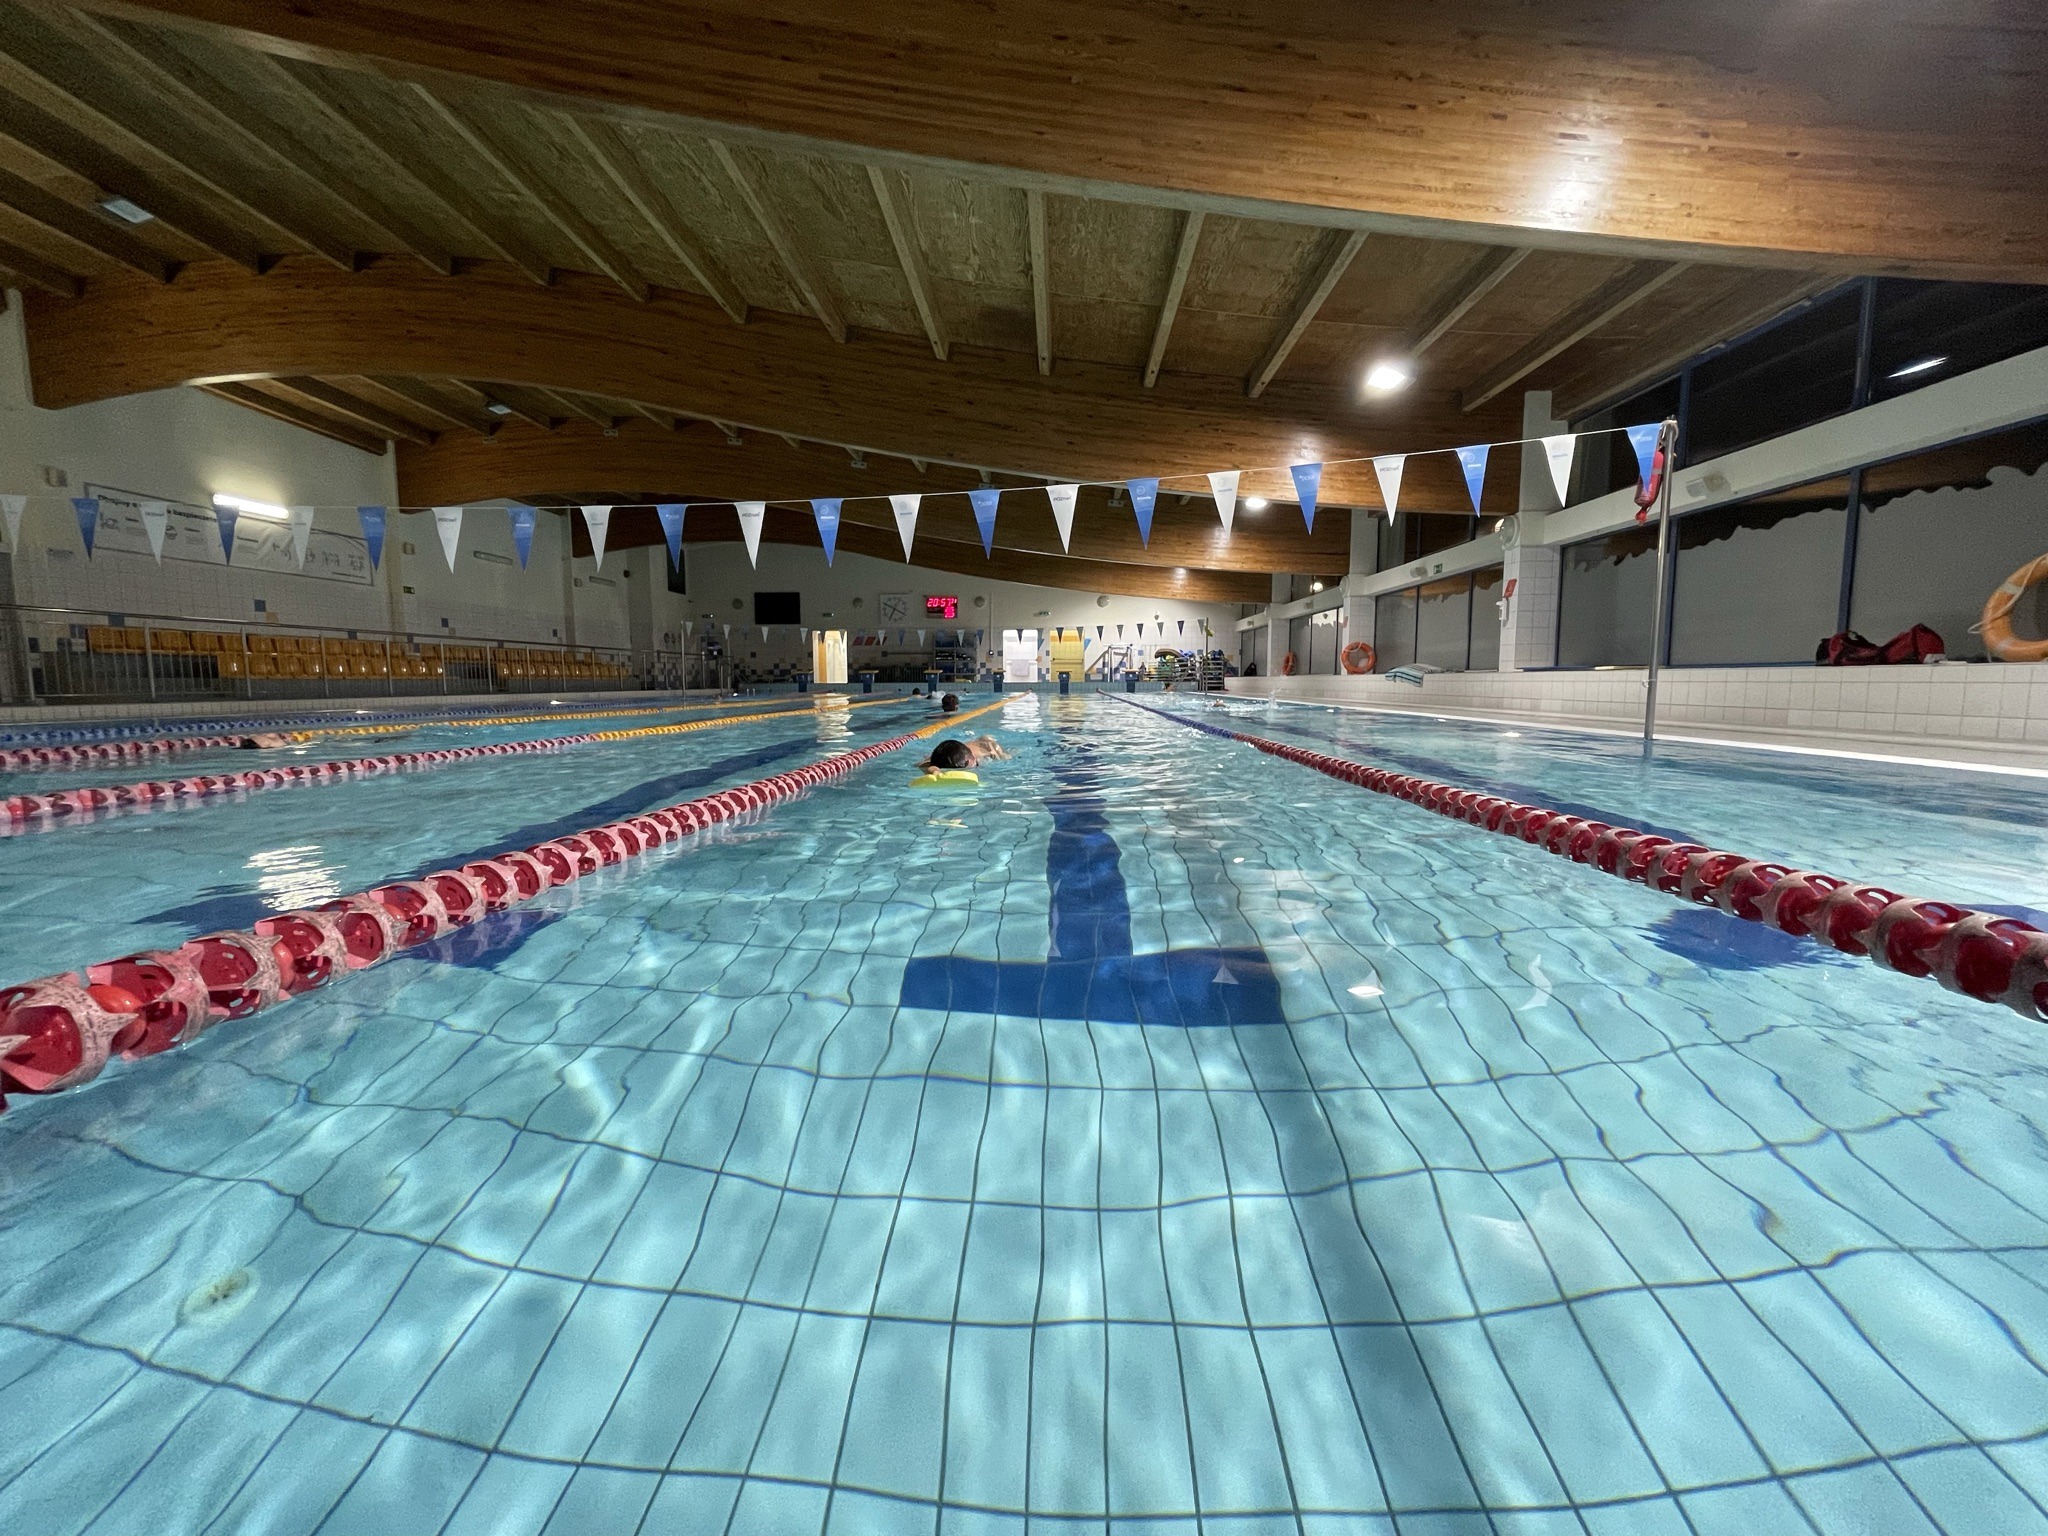 Pływanie w konkurencji: Jak przygotować się do zawodów pływackich?